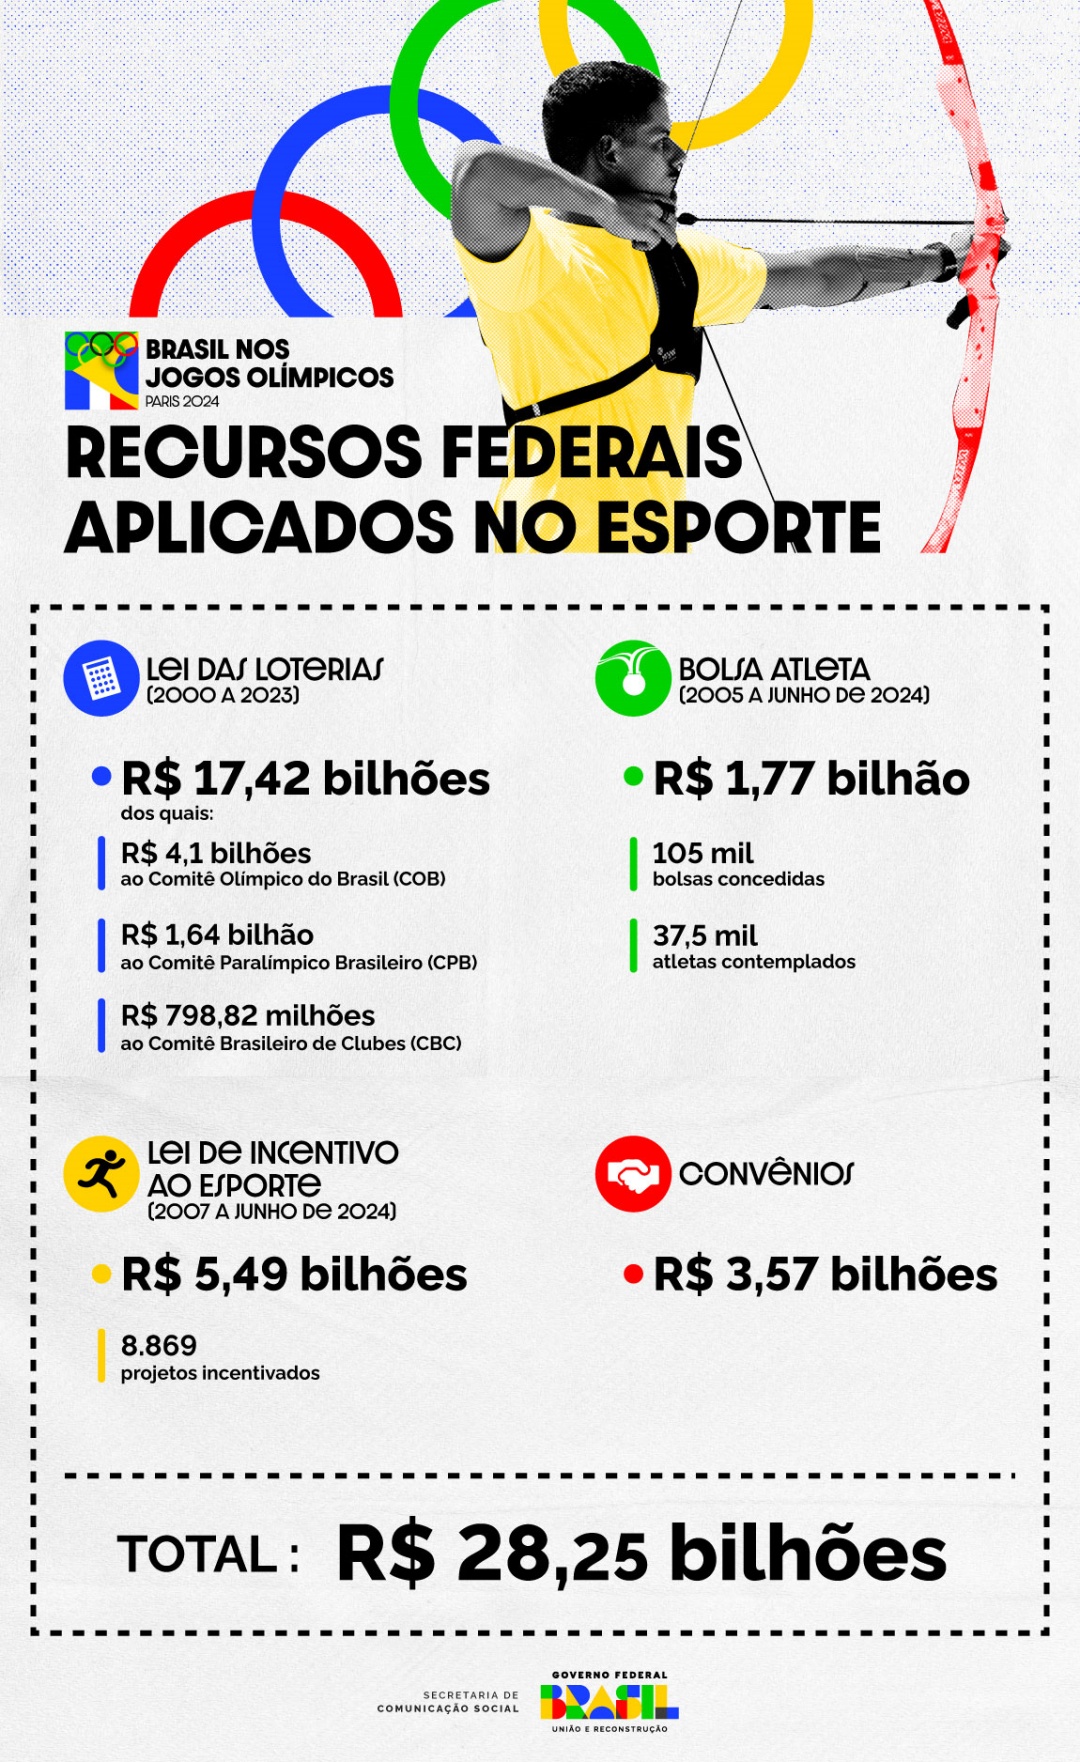 Programas e ações do Governo Federal ajudaram a profissionalizar o esporte no Brasil